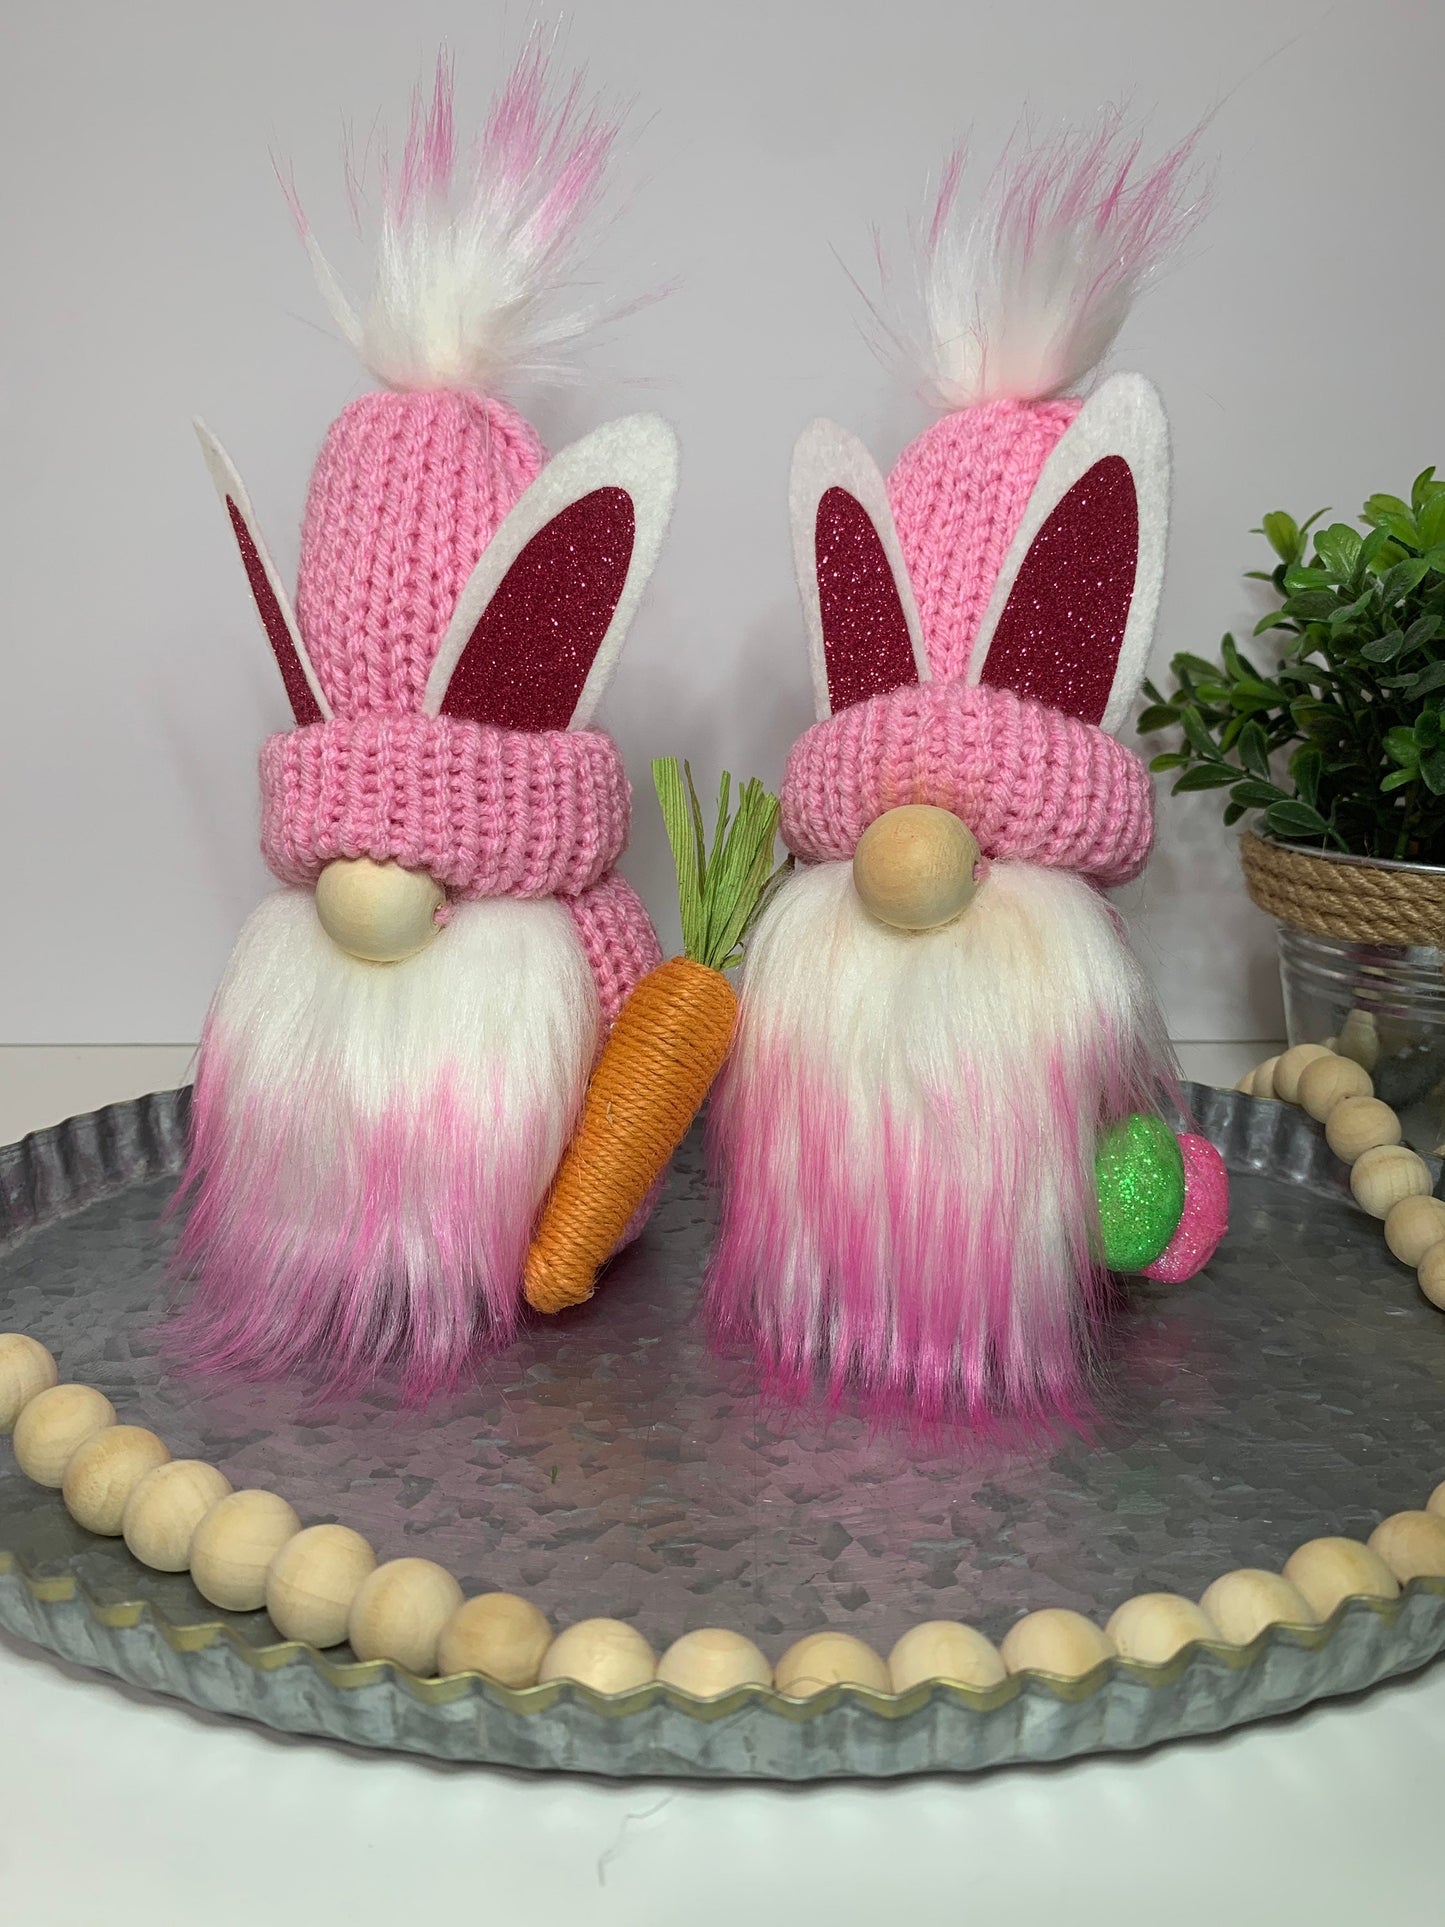 Easter Farmhouse Gnome / Tiered Tray Decor / Rustic Spring Gnome / Bunny Rabbit Gnome